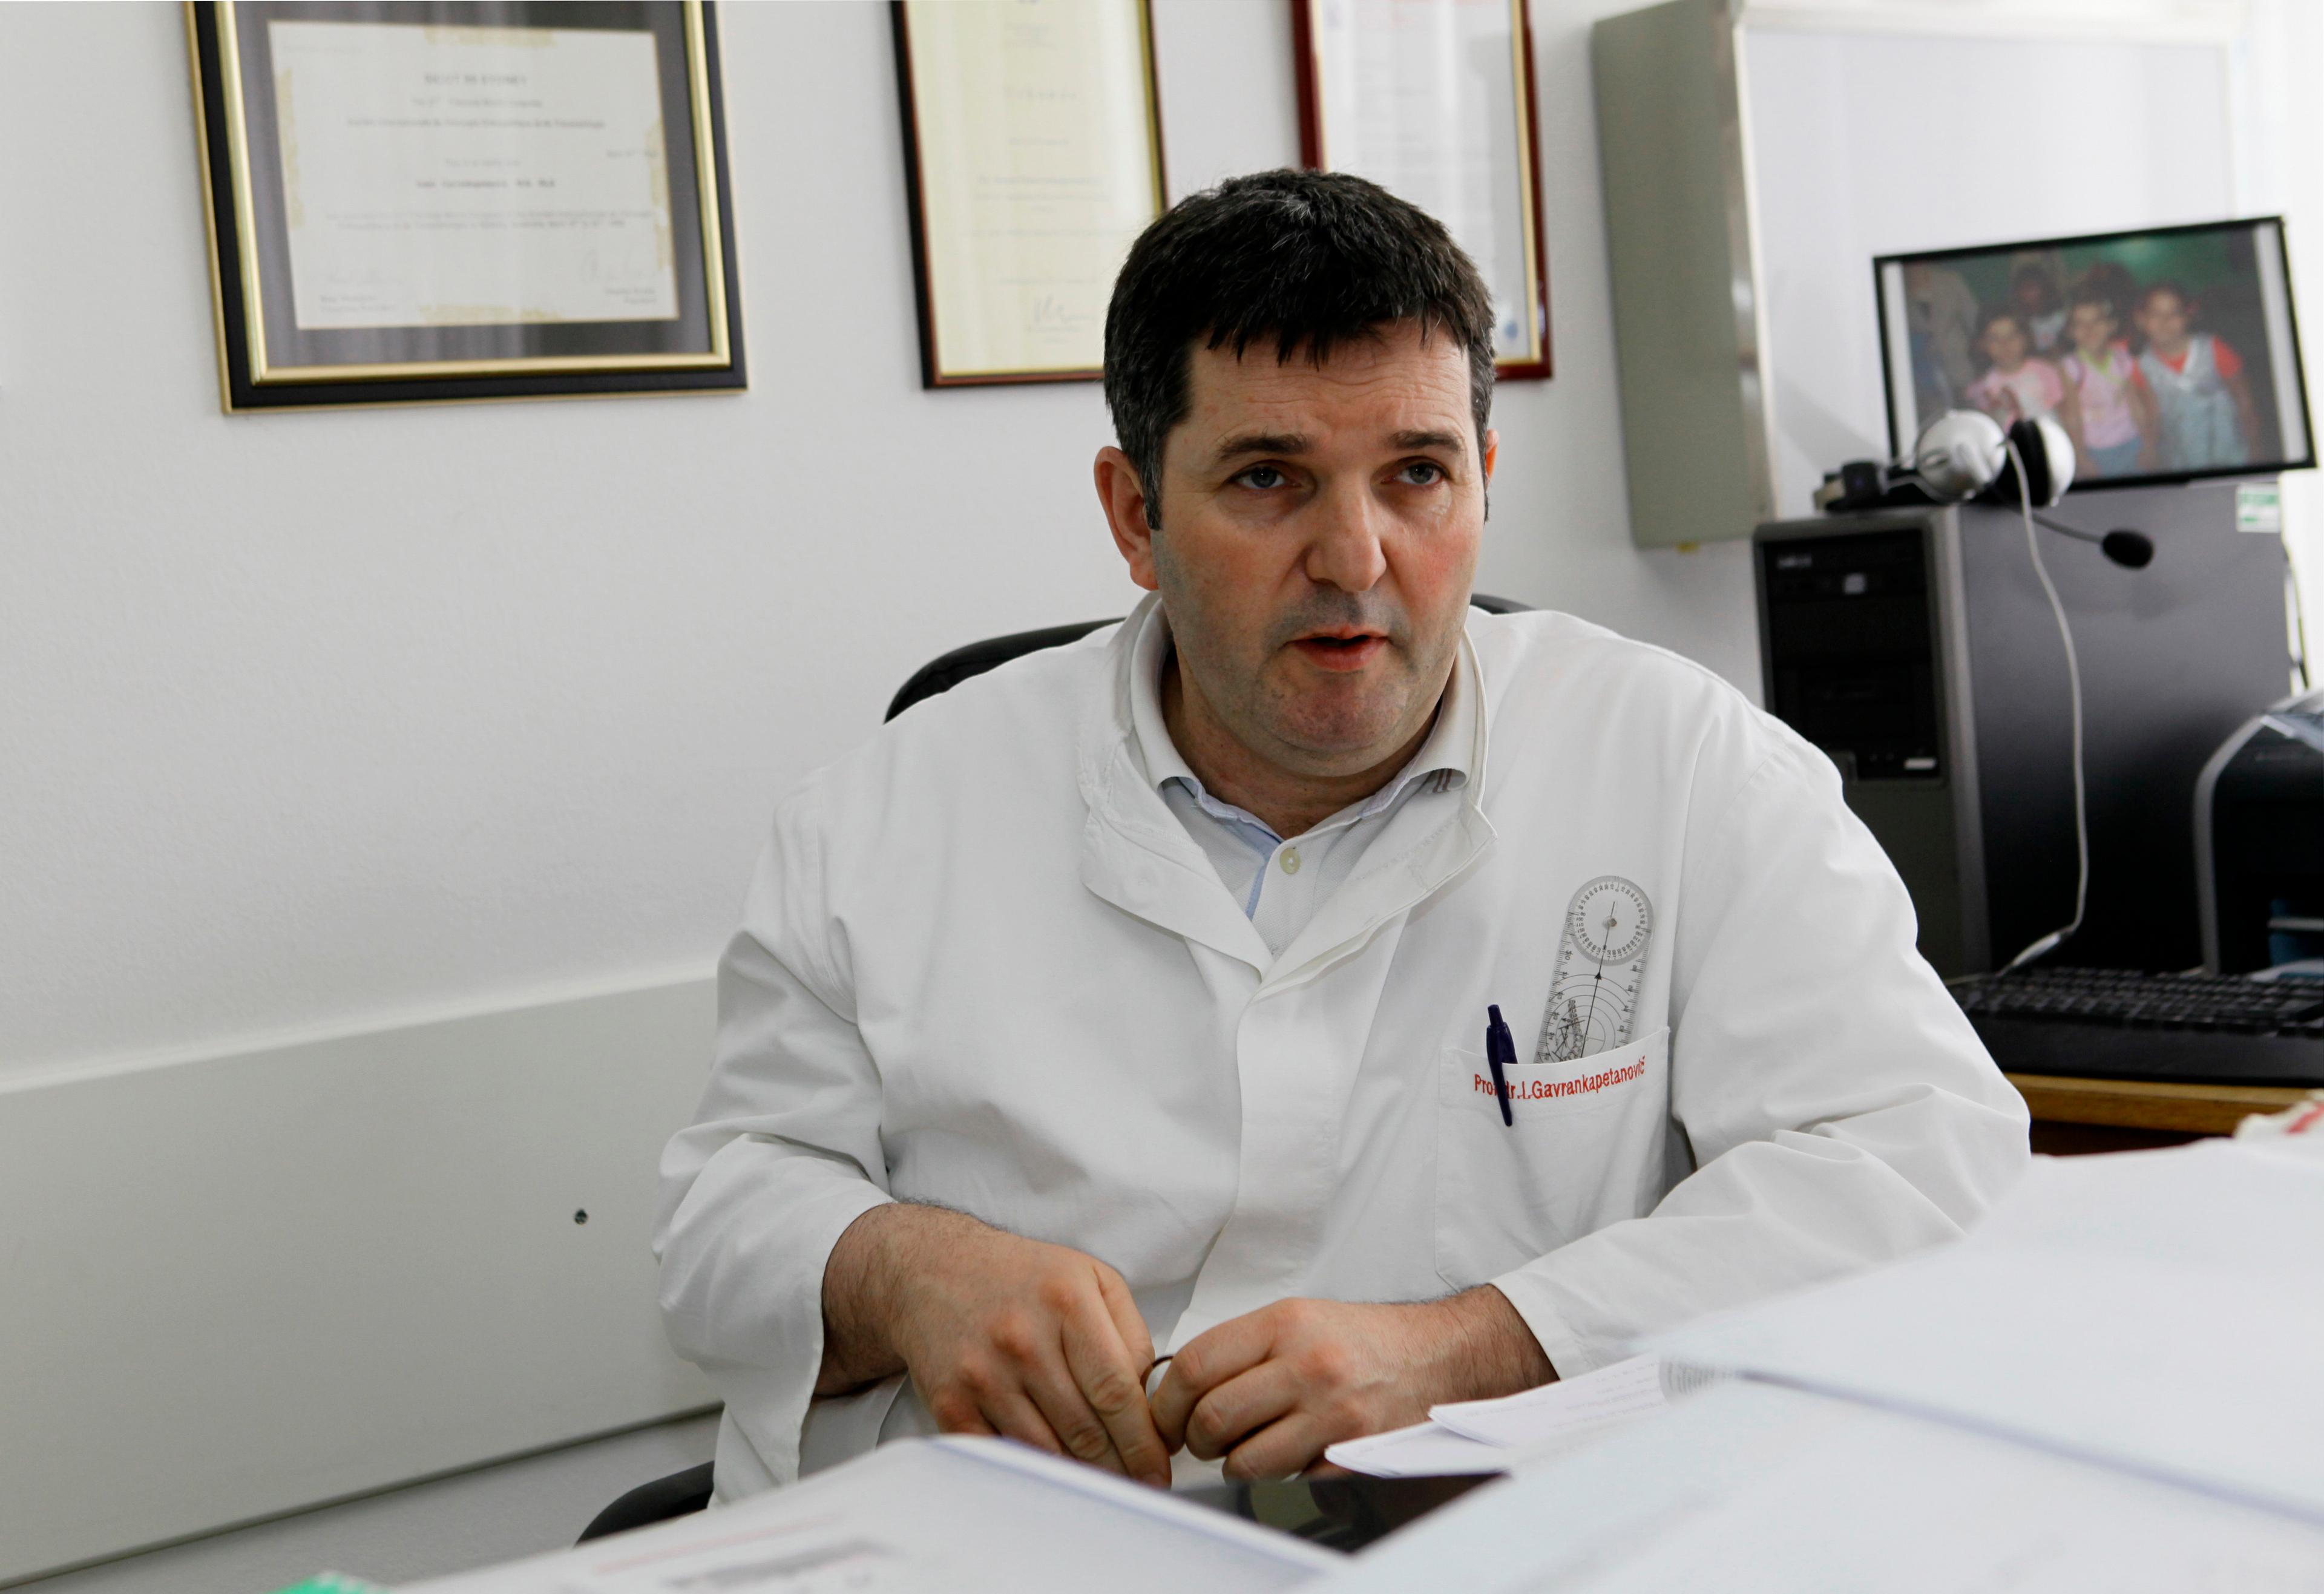 Članovi Etičkog komiteta zatražili oduzimanje licence doktoru Gavrankapetanoviću